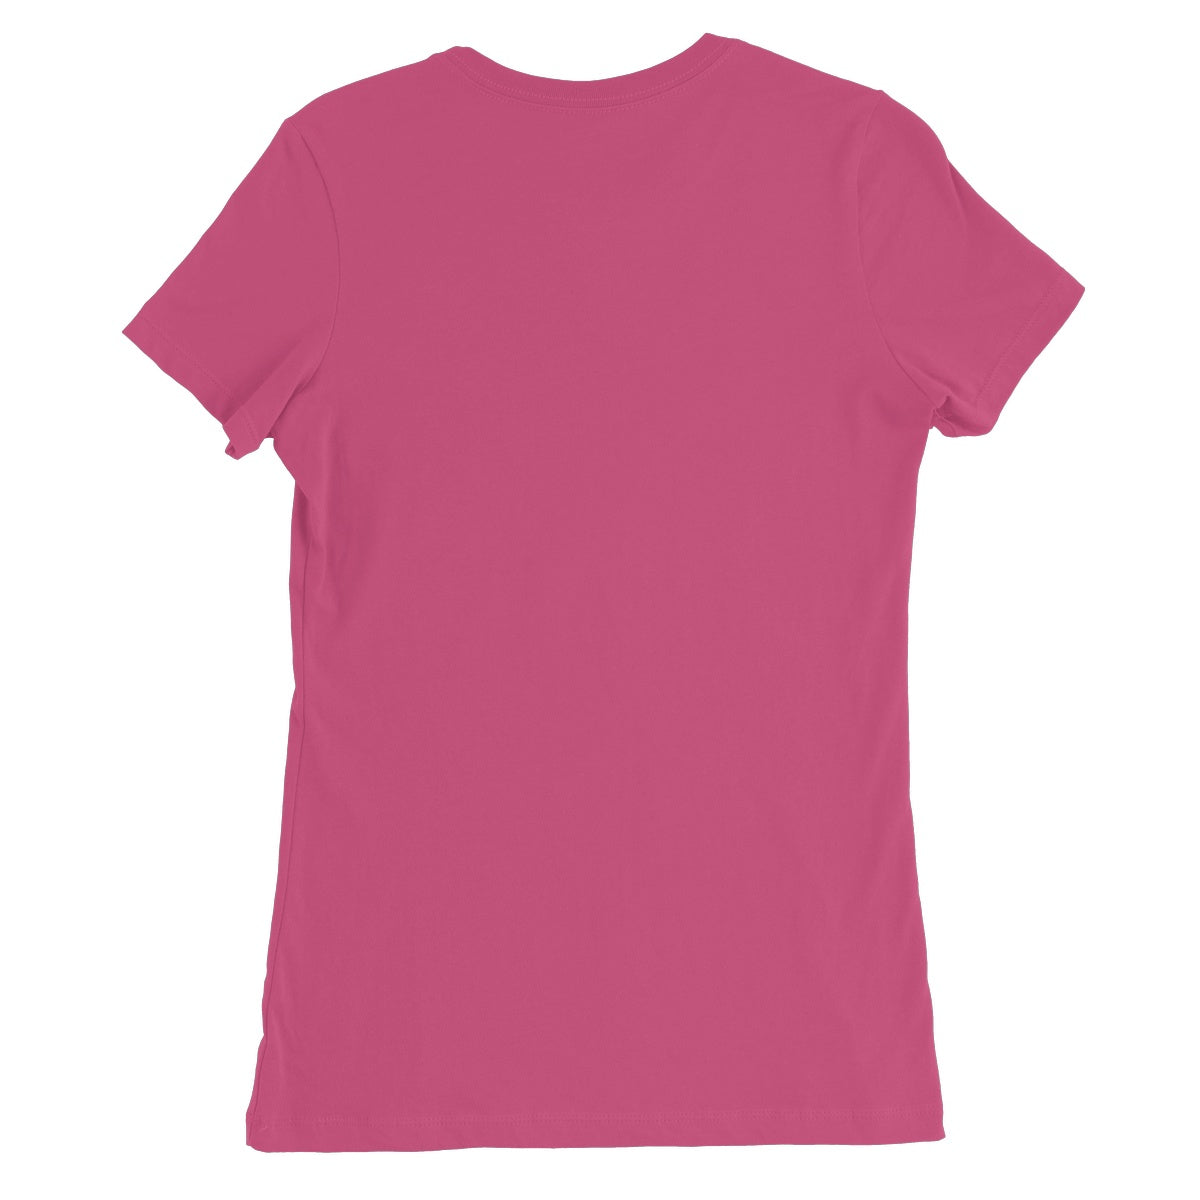 AQUA HMP2 - 05 - Kids - Women's Fine Jersey T-Shirt